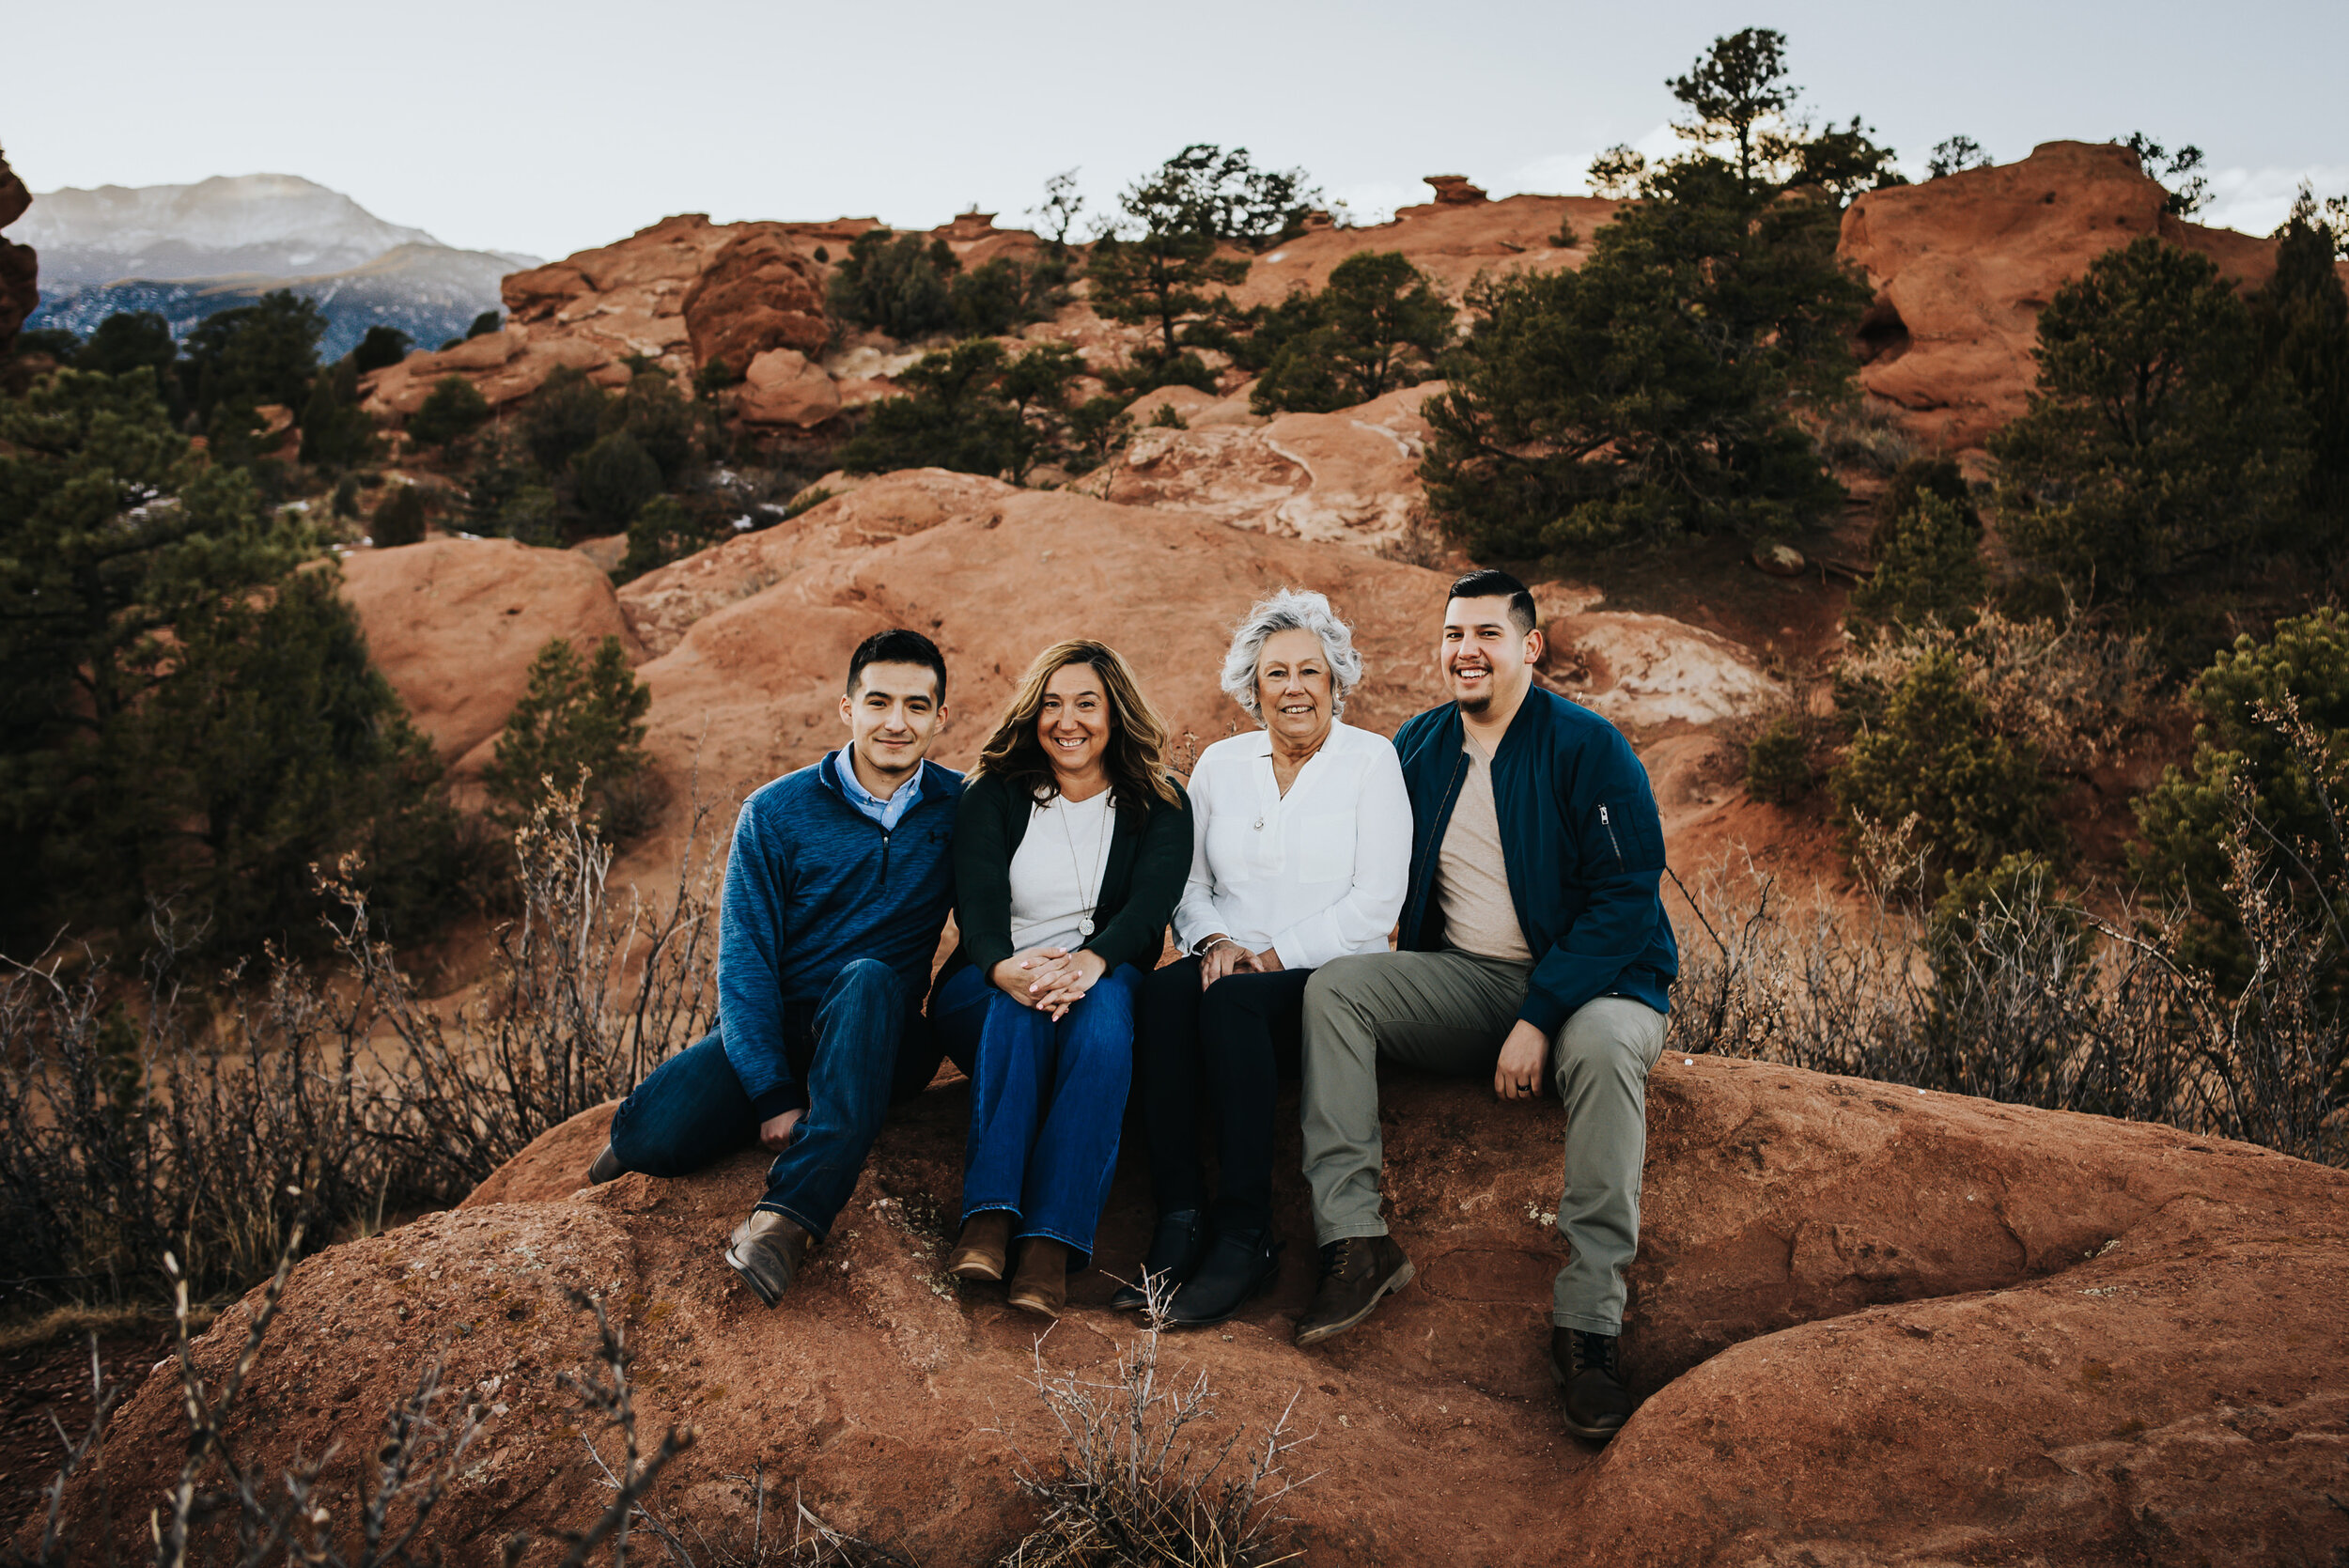 Steven Extended Family Session Colorado Springs Sunset Garden of the Gods Wild Prairie Photography-8-2021.jpg